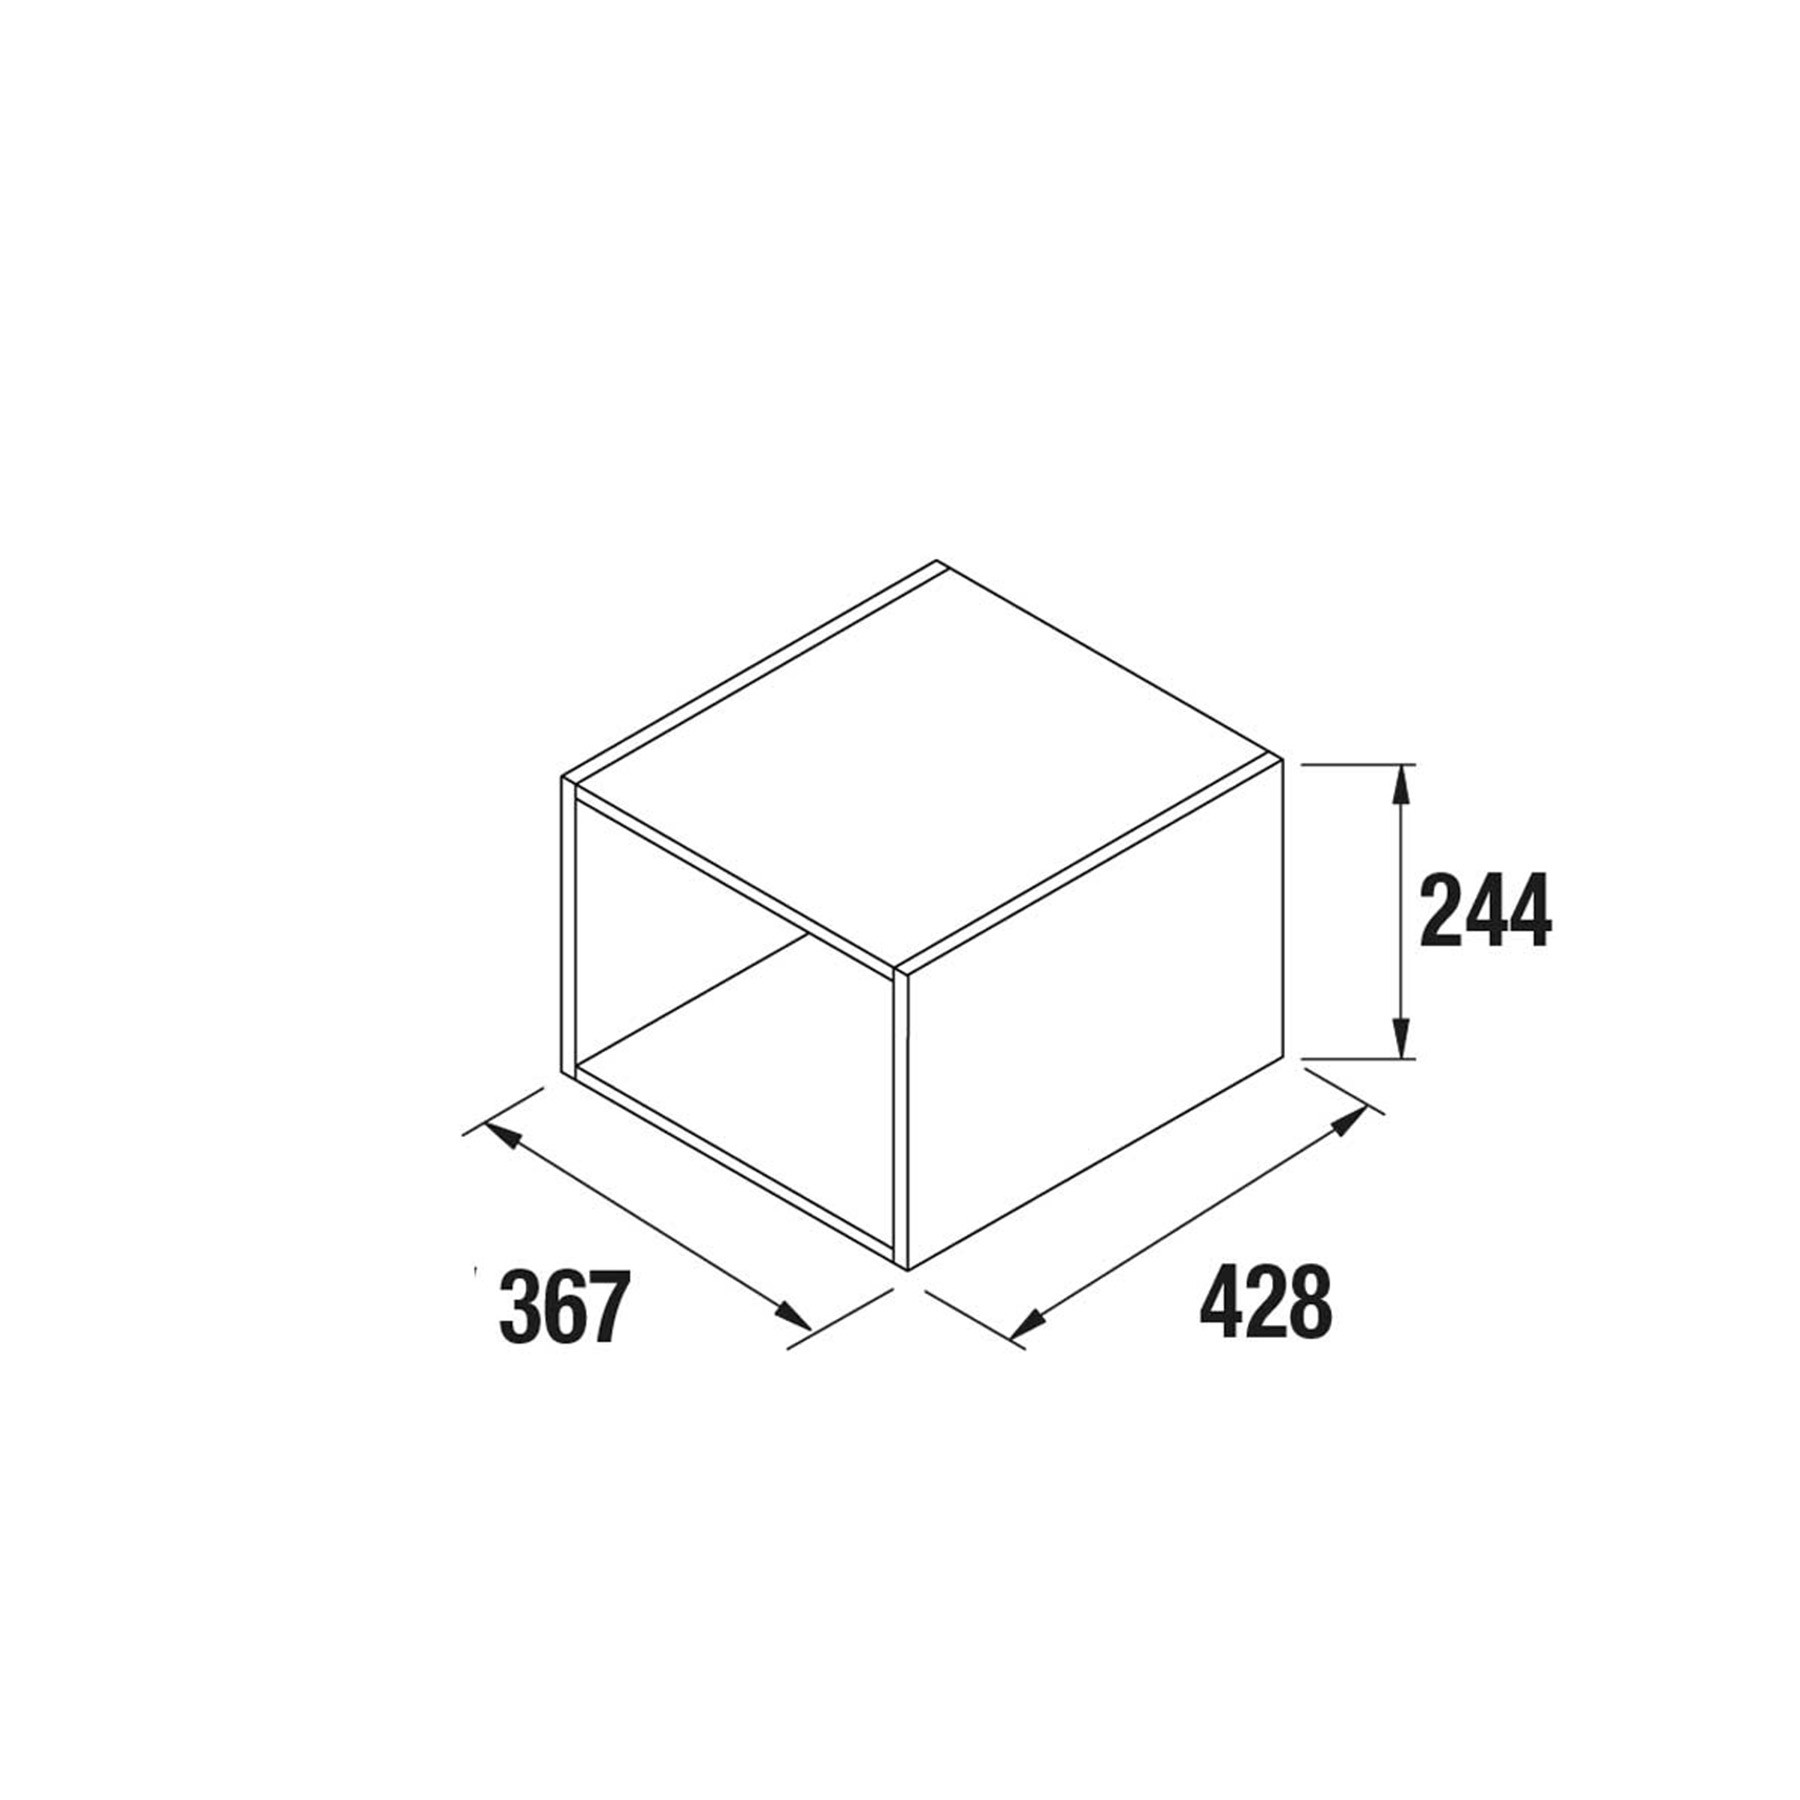 Ensemble 2 cubes Meuble de salle de bains Gamme PRO SALGAR ALLIANCE 400 367 x 244 x 428 mm - Réf:23347